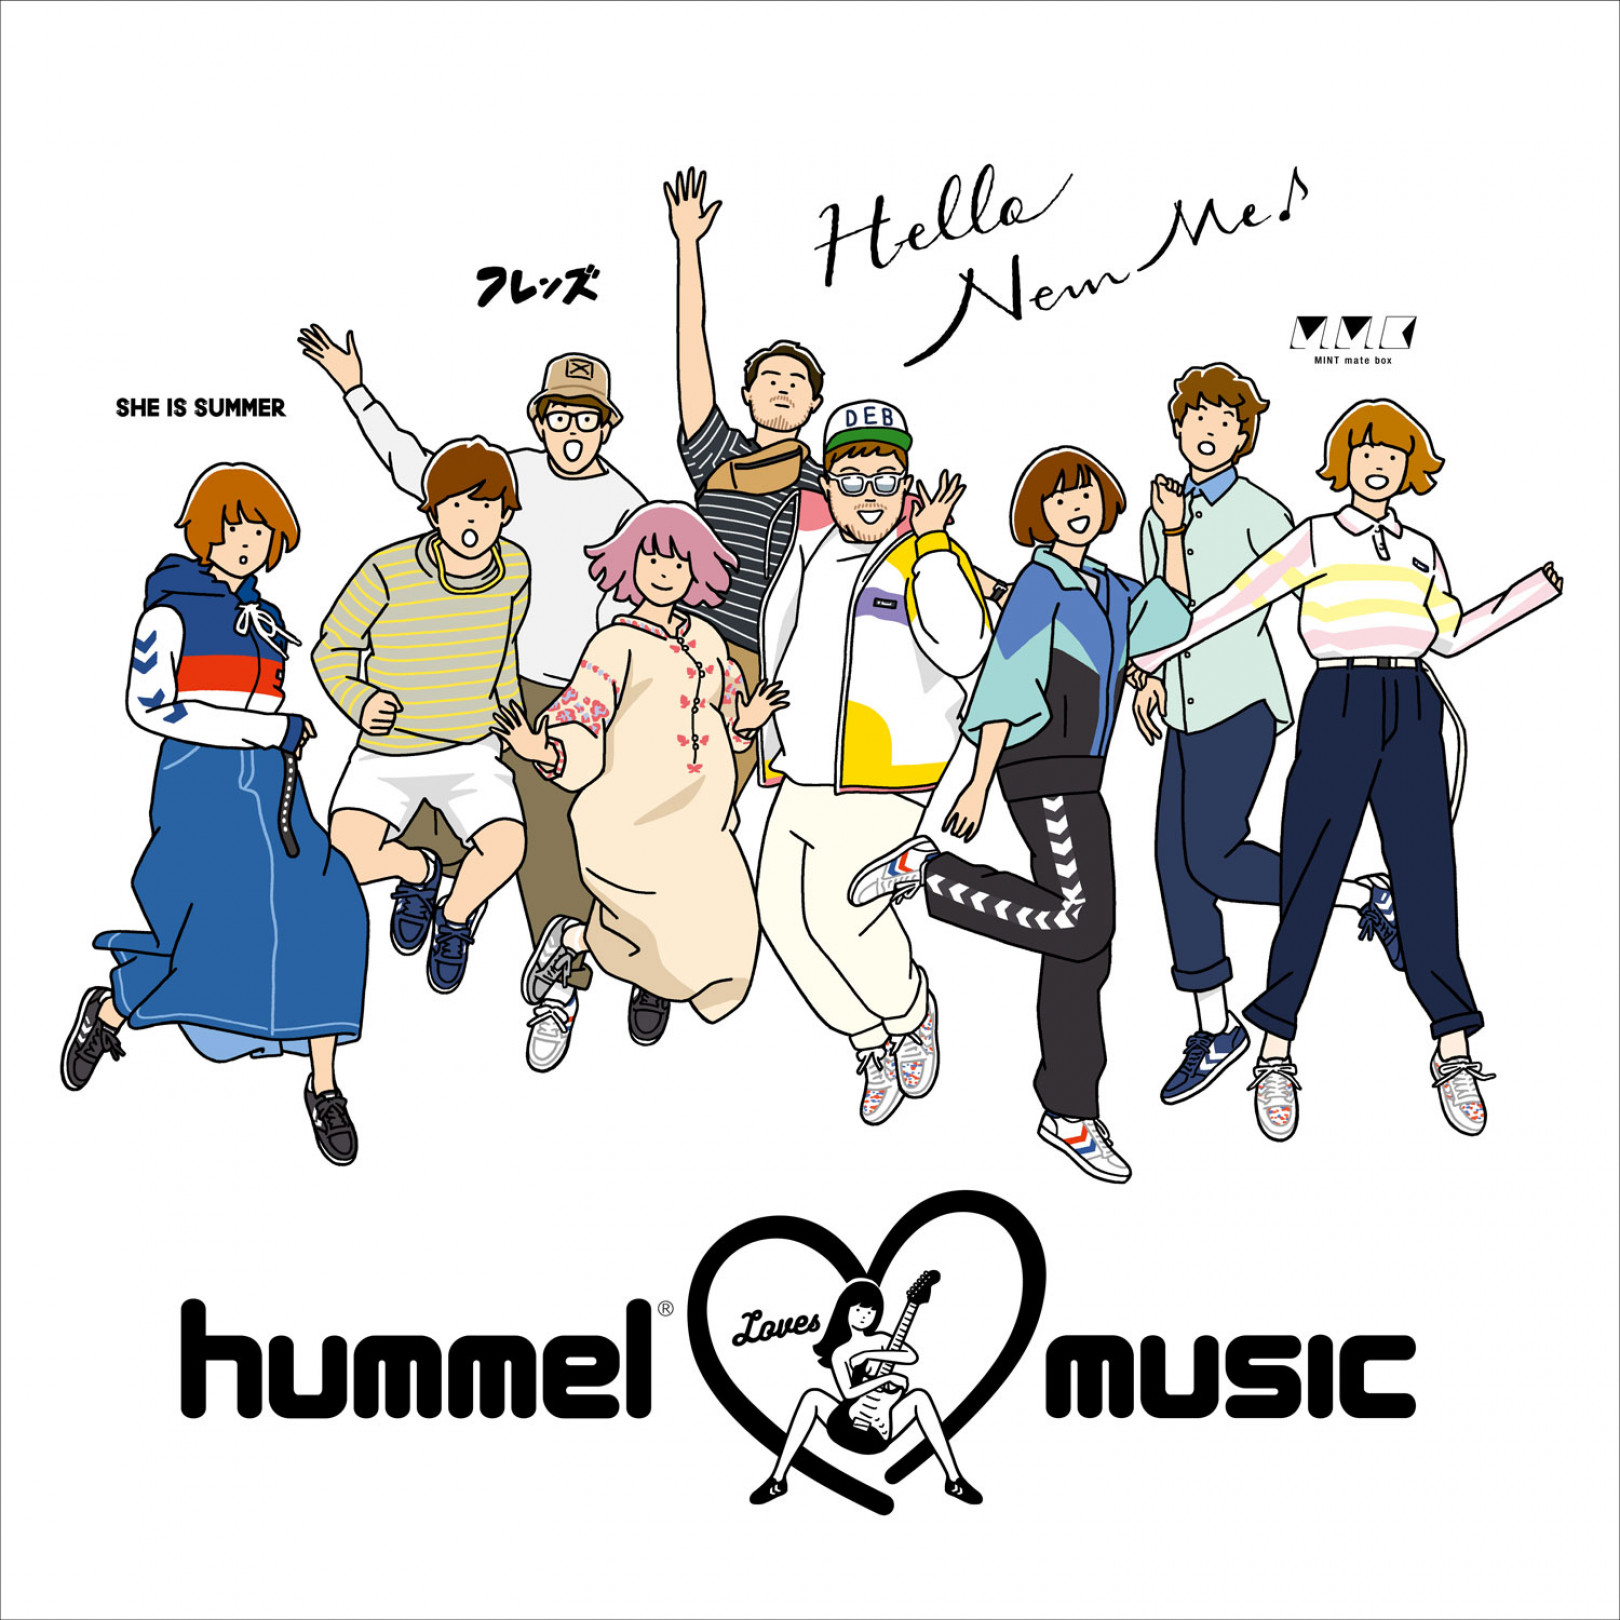 「hummel loves music」プロジェクトビジュアルイラスト